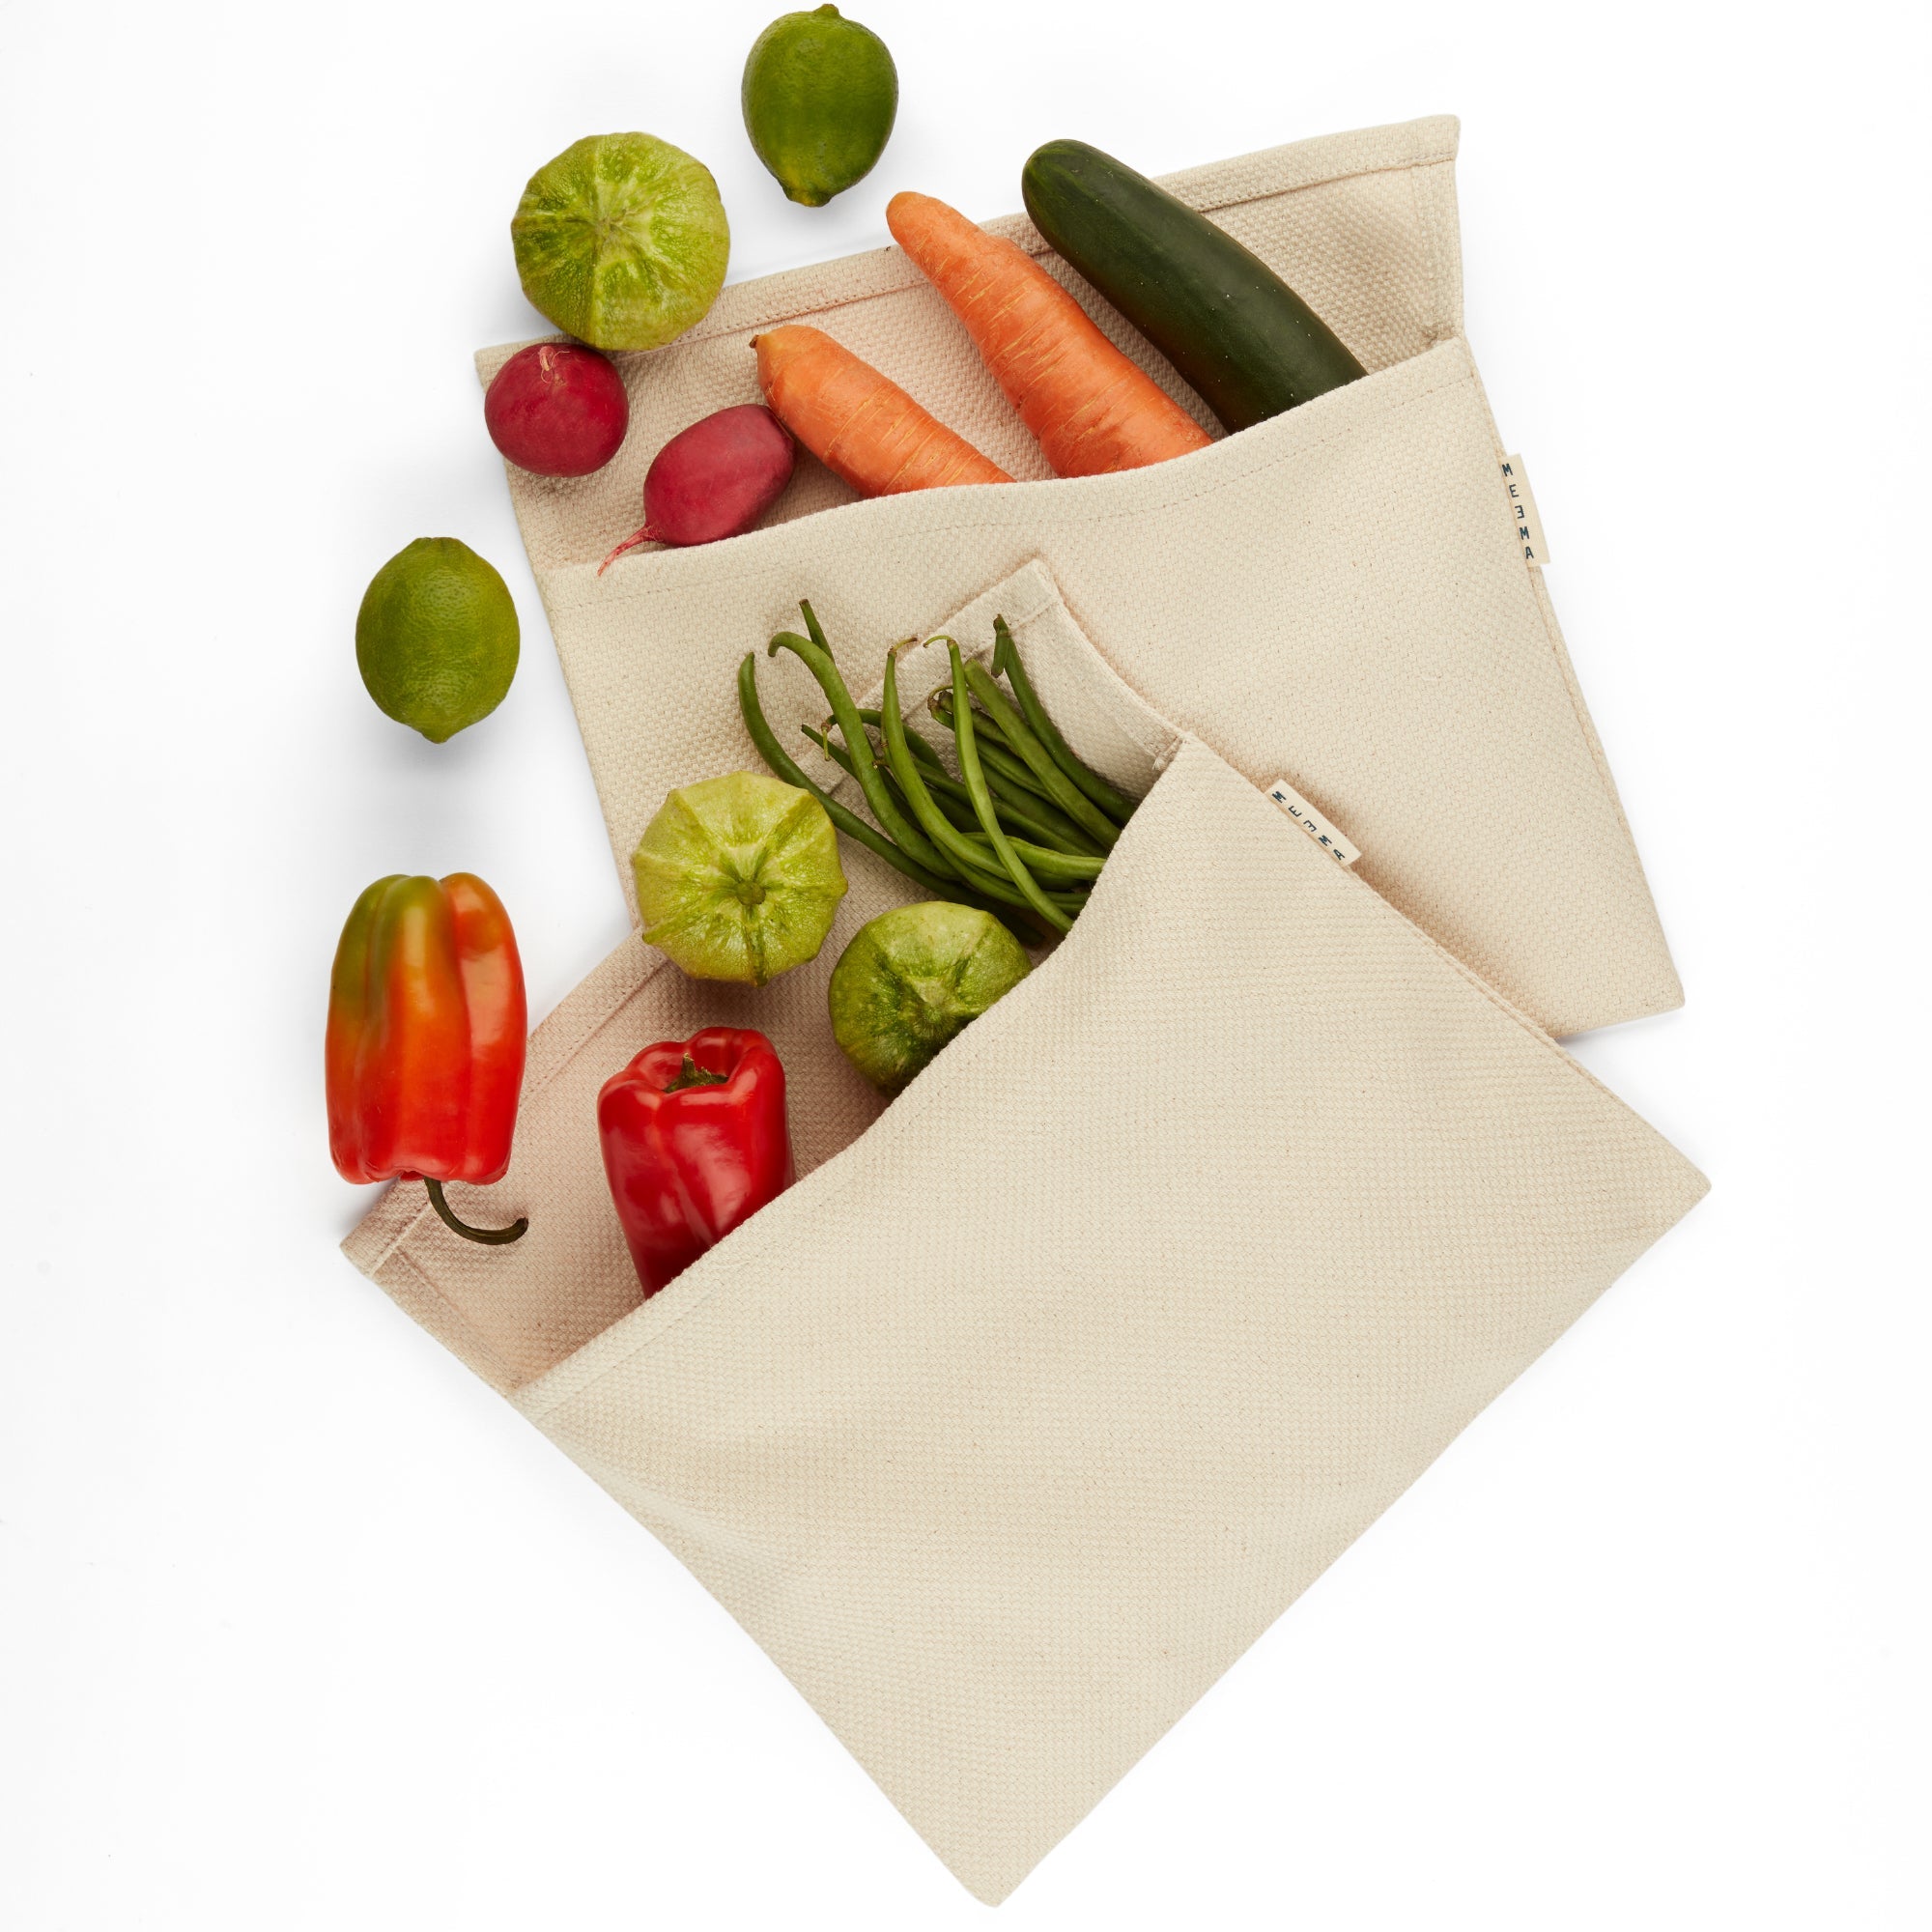 Vegetable Crisper Bags by MEEMA